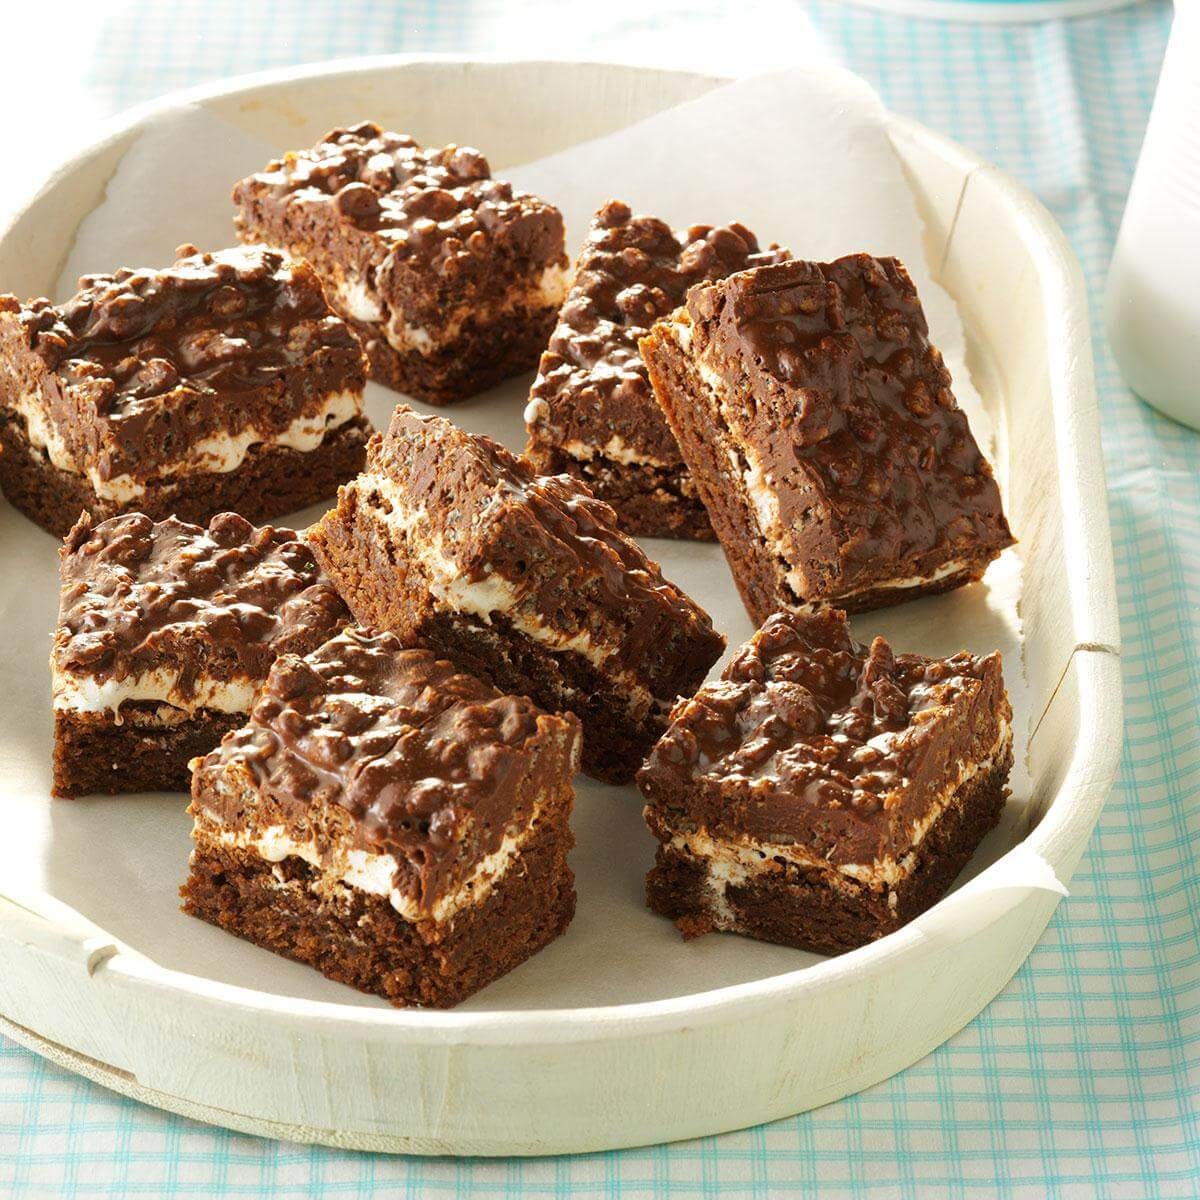 All-Edge Brownie Pan Is Here to Satisfy Crispy, Crunchy Cravings